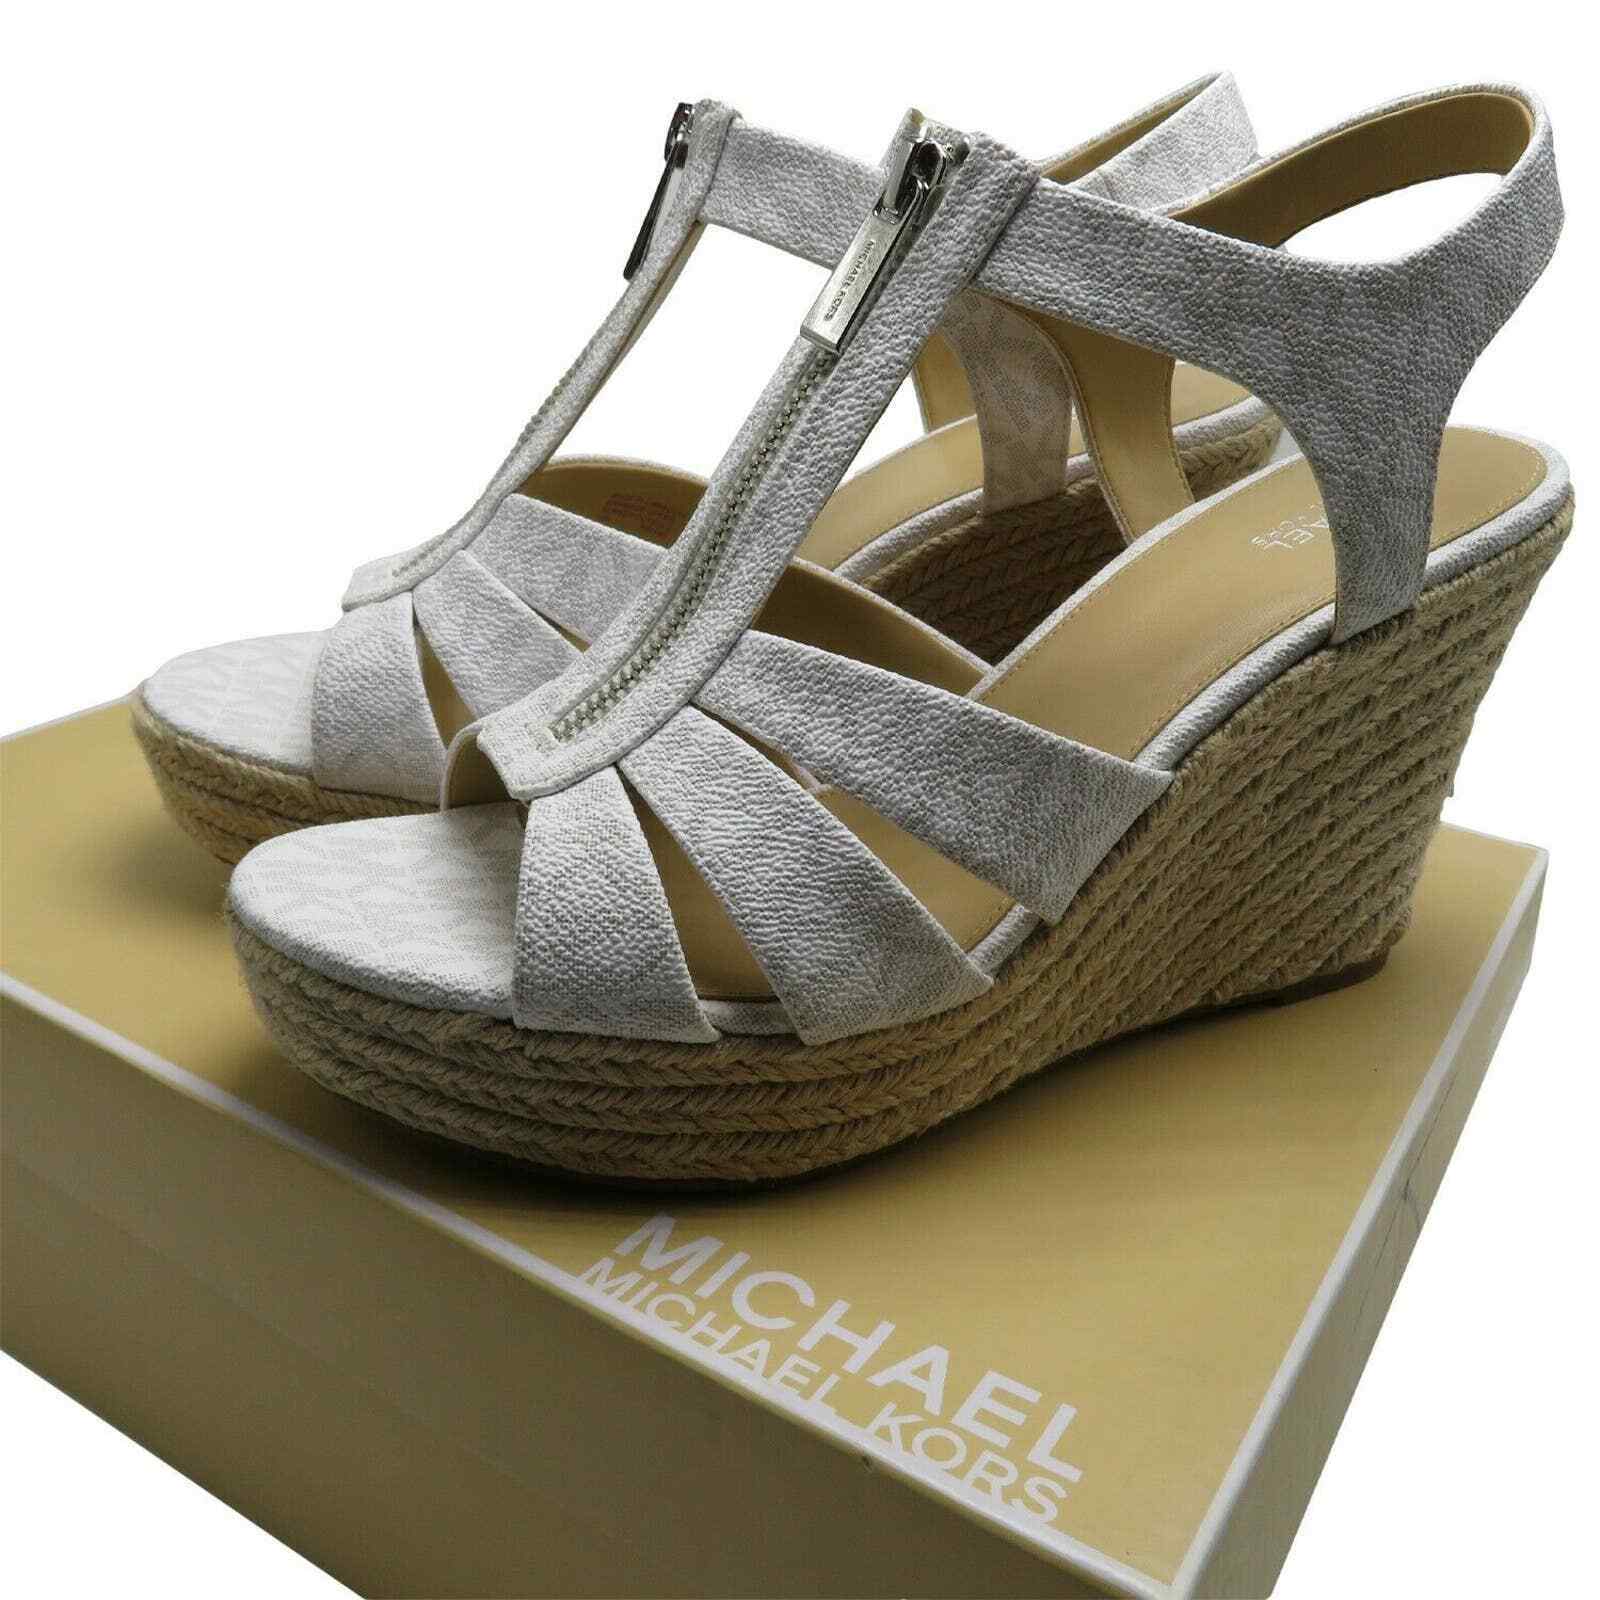 Michael Kors Wedge Sandal MK Zip Espadrille Wedges | eBay